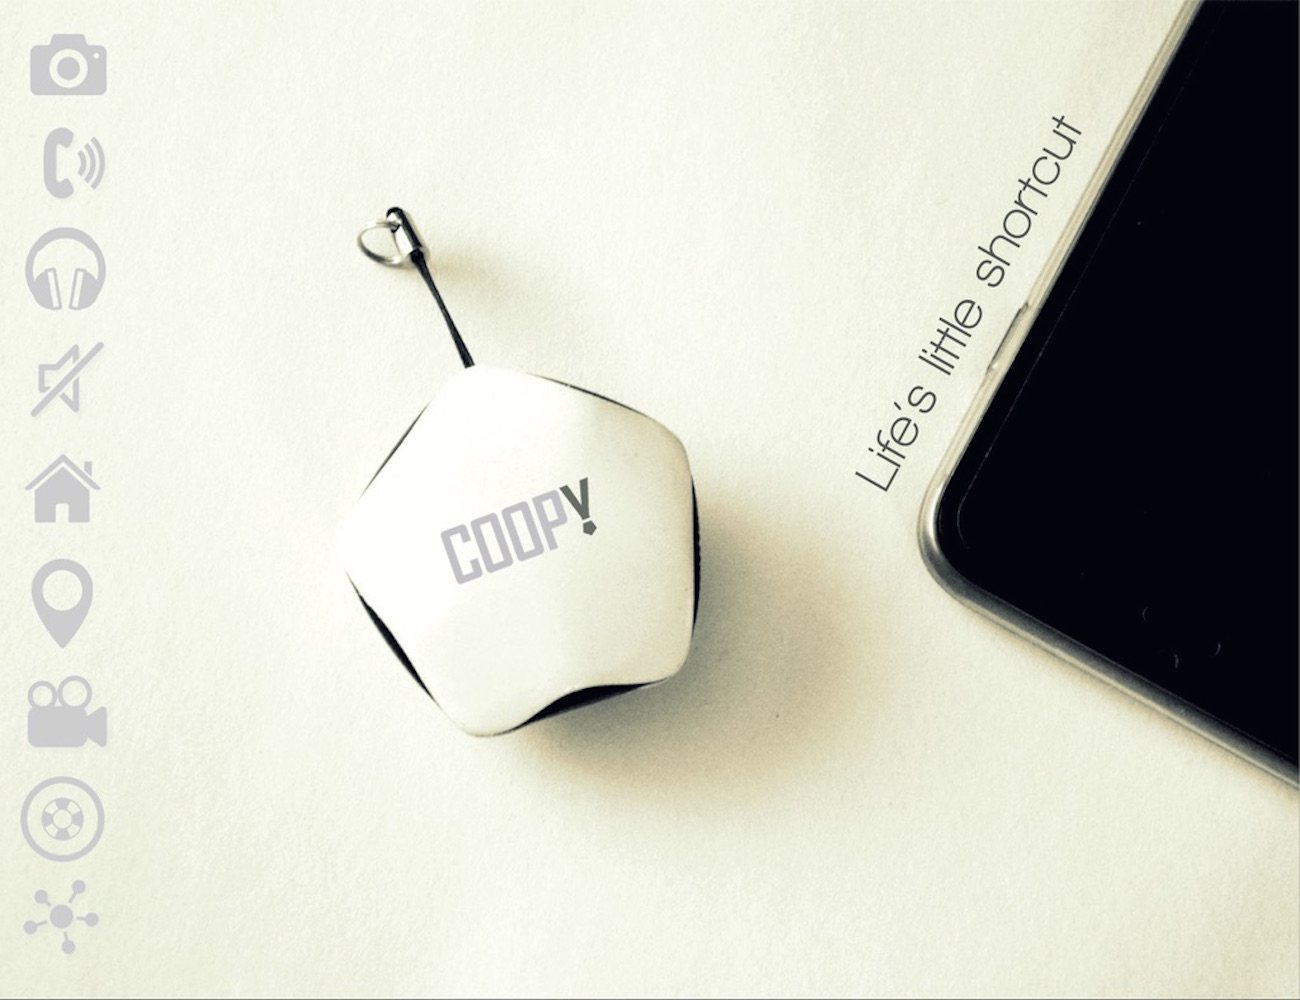 Coopy، کنترلی برای گوشی هوشمند شما